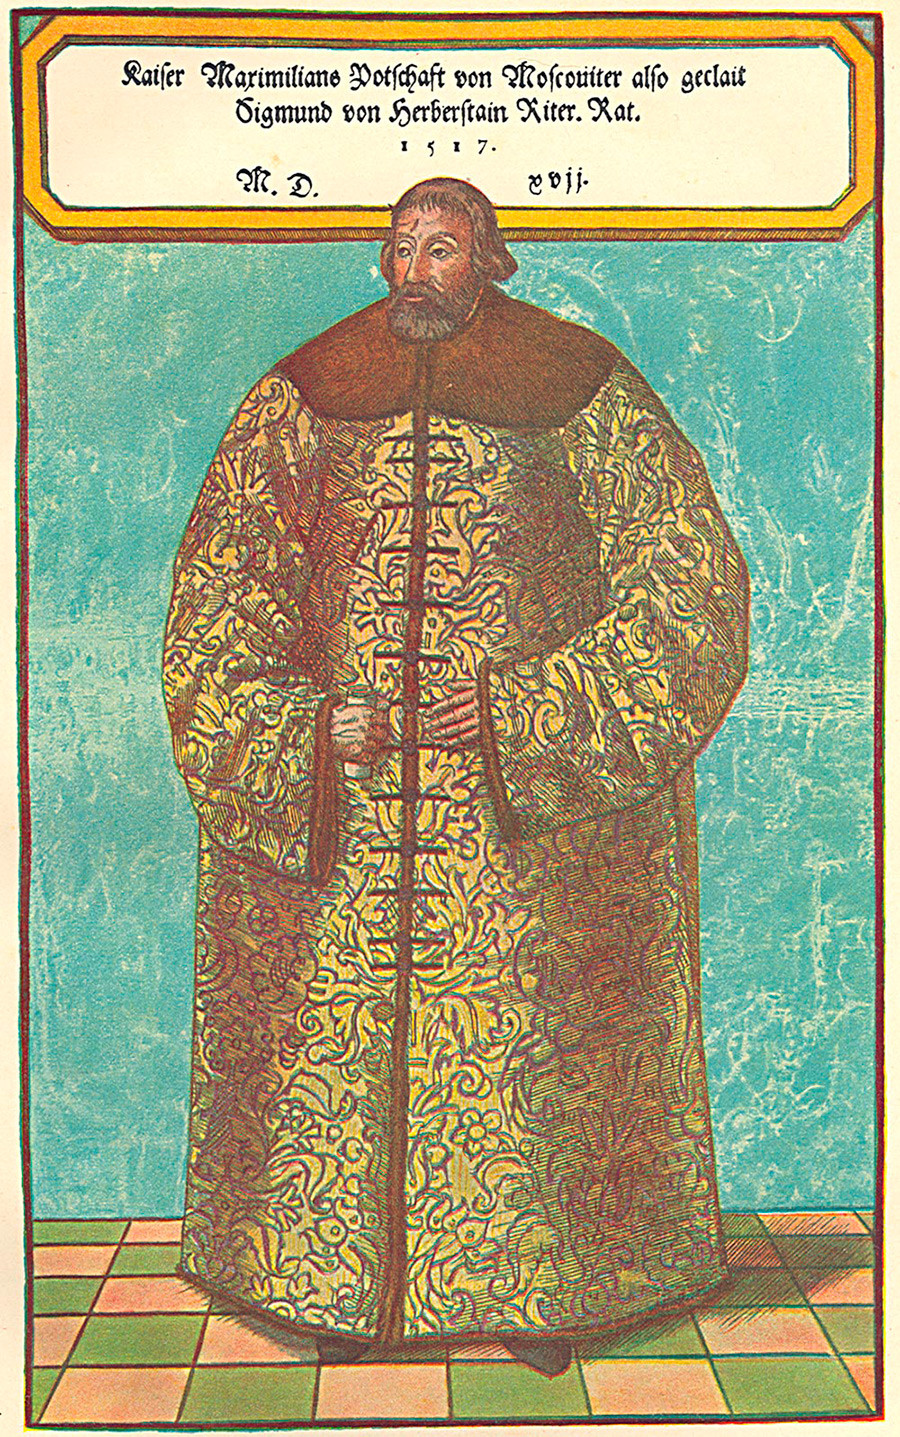 Сигмунд фон Херберштајн у руској ношњи добијеној на поклон од Василија Ивановича 1517. године.